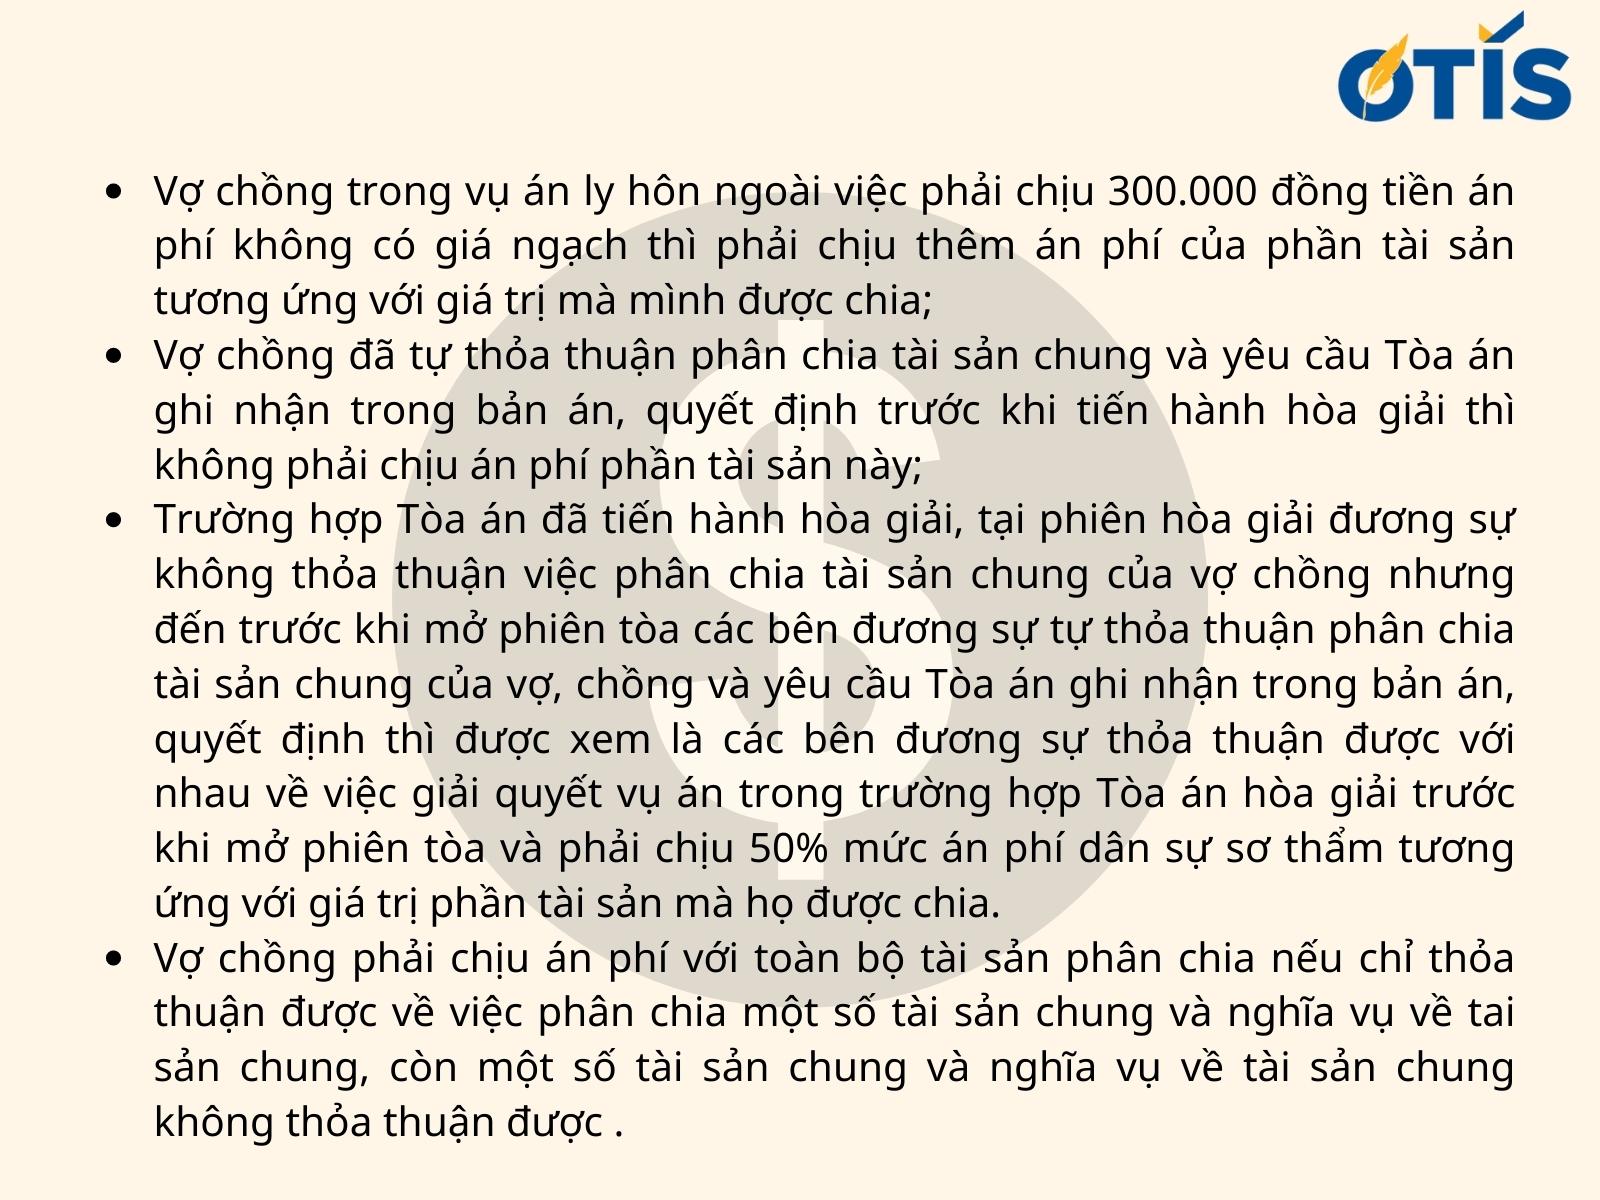 chi-phi-ly-hon-don-phuong-hien-nay-la-bao-nhieu (2).jpg